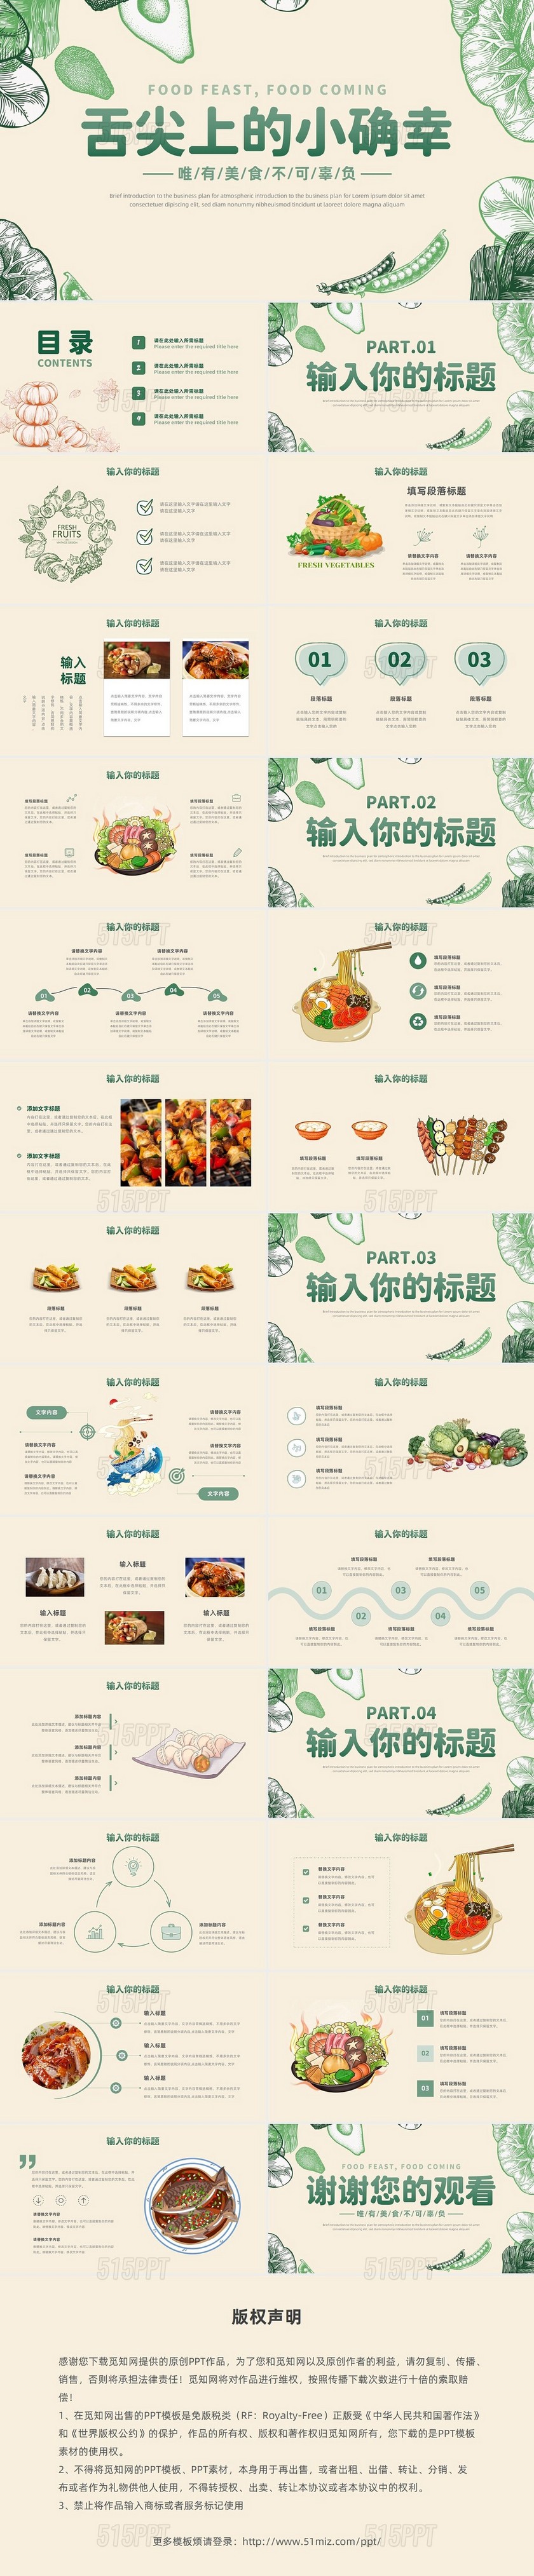 绿色简约舌尖美食传统美食美食节活动通用PPT模板